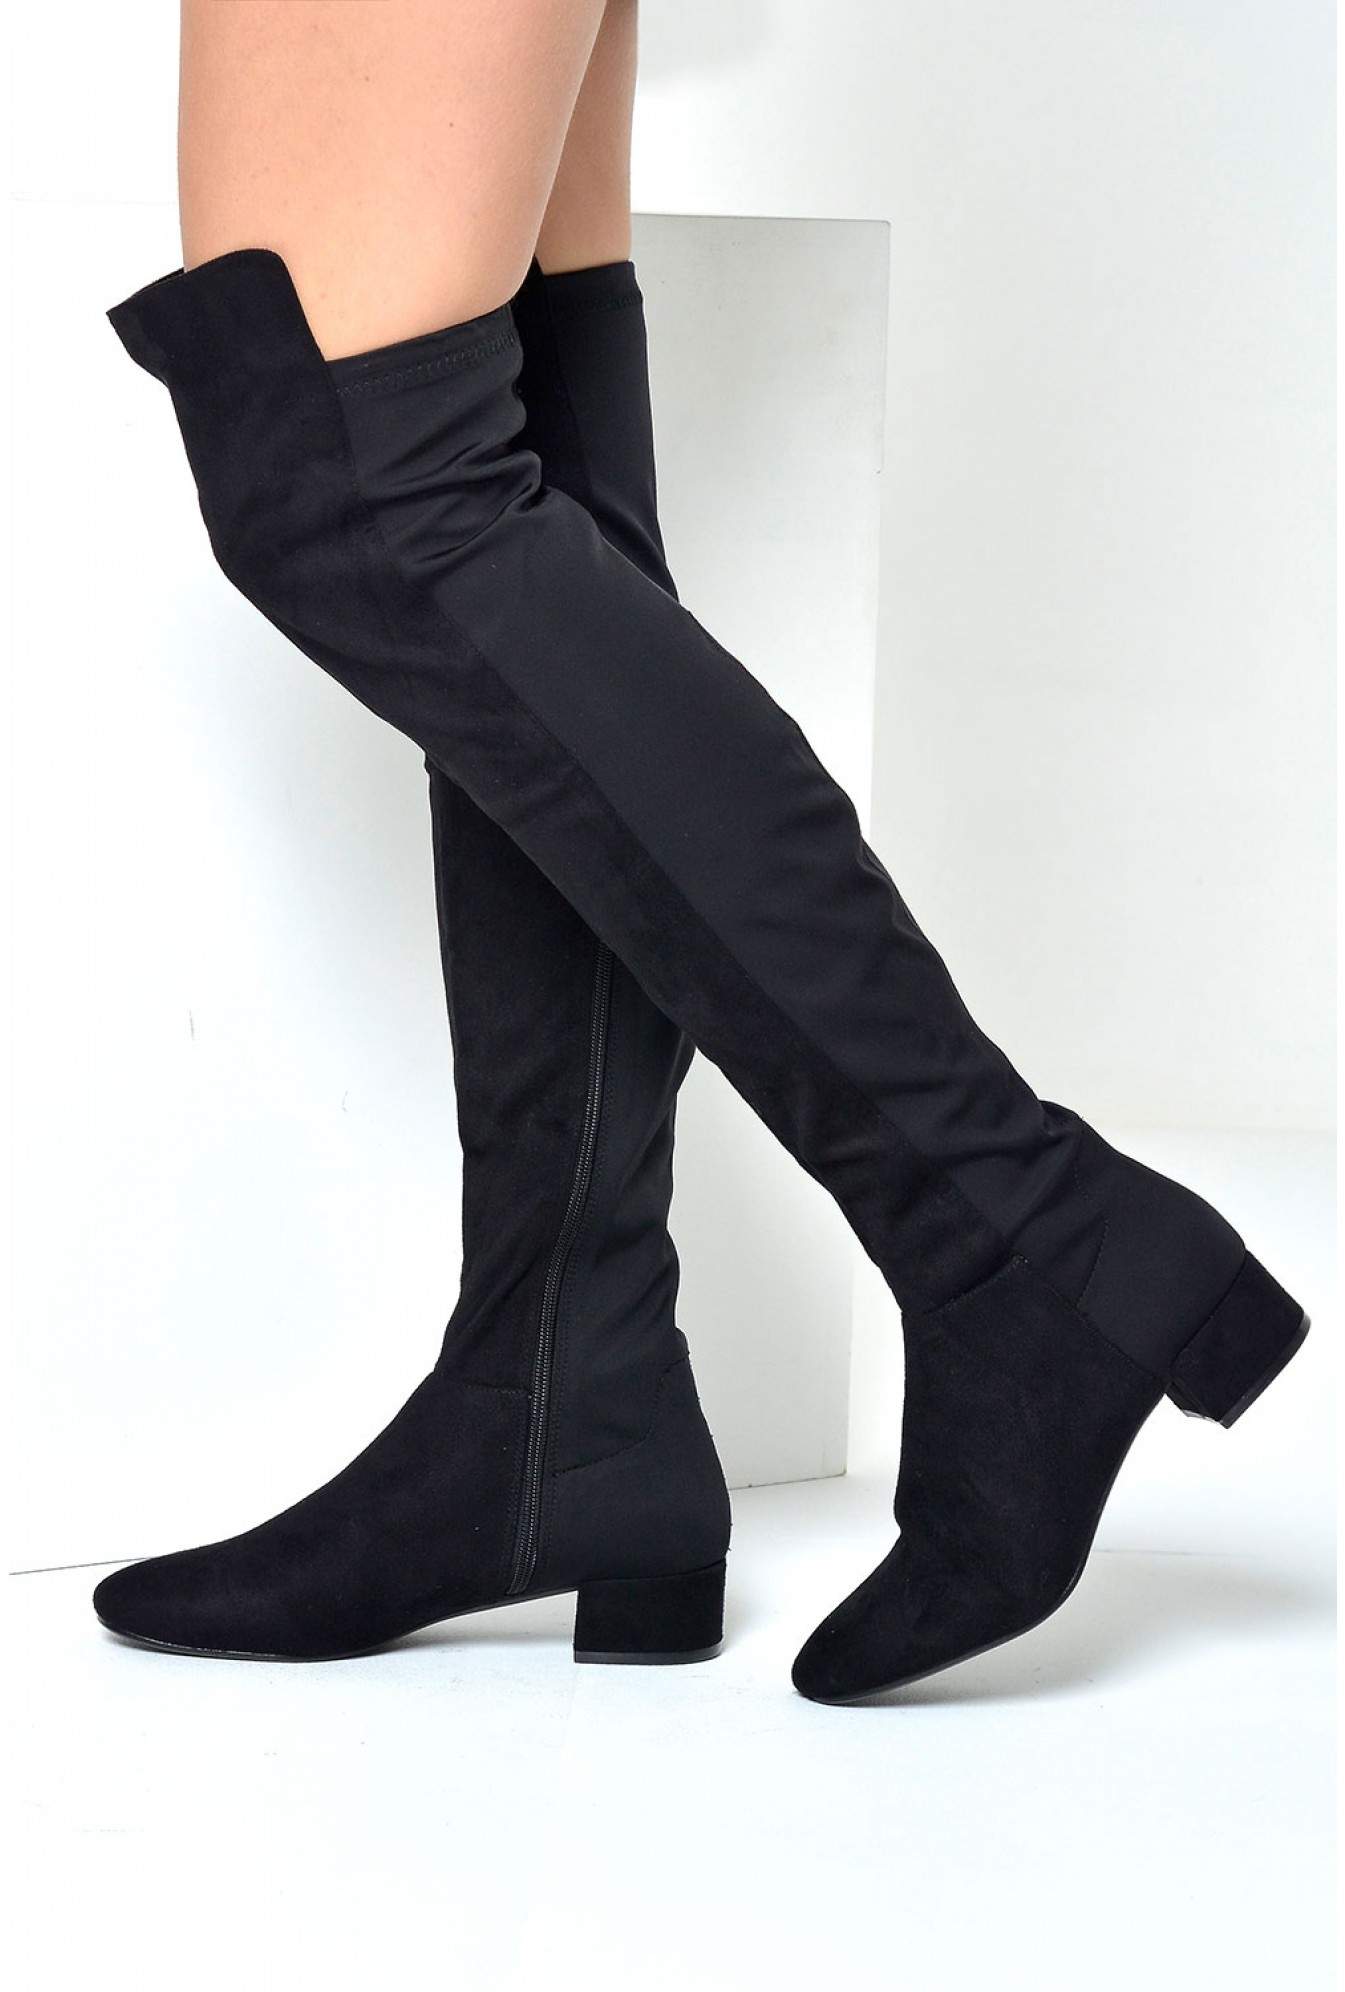 black suede boots no heel